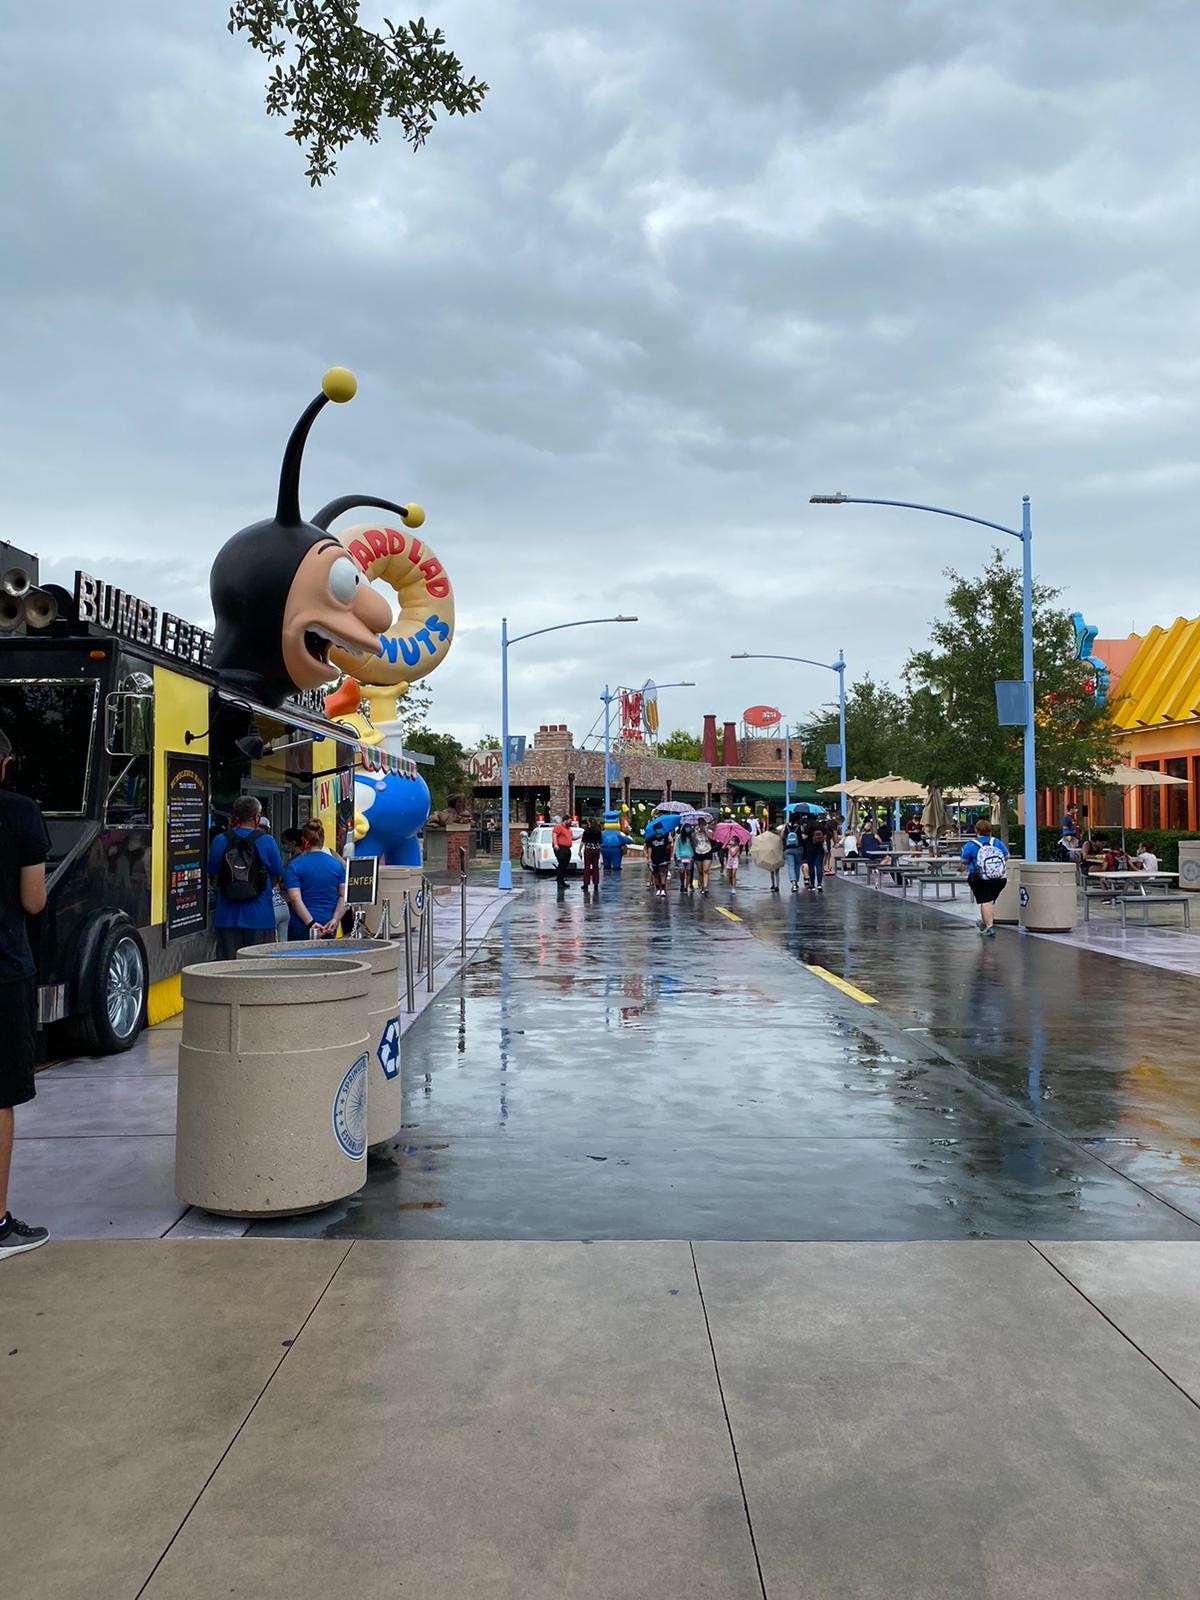 Acompanhamos o primeiro dia de abertura dos parques da Universal Studios em Orlando pós quarentena de coronavirus (Foto: Imagem concedia por Beatriz Rodrigues (@biarodrigs))